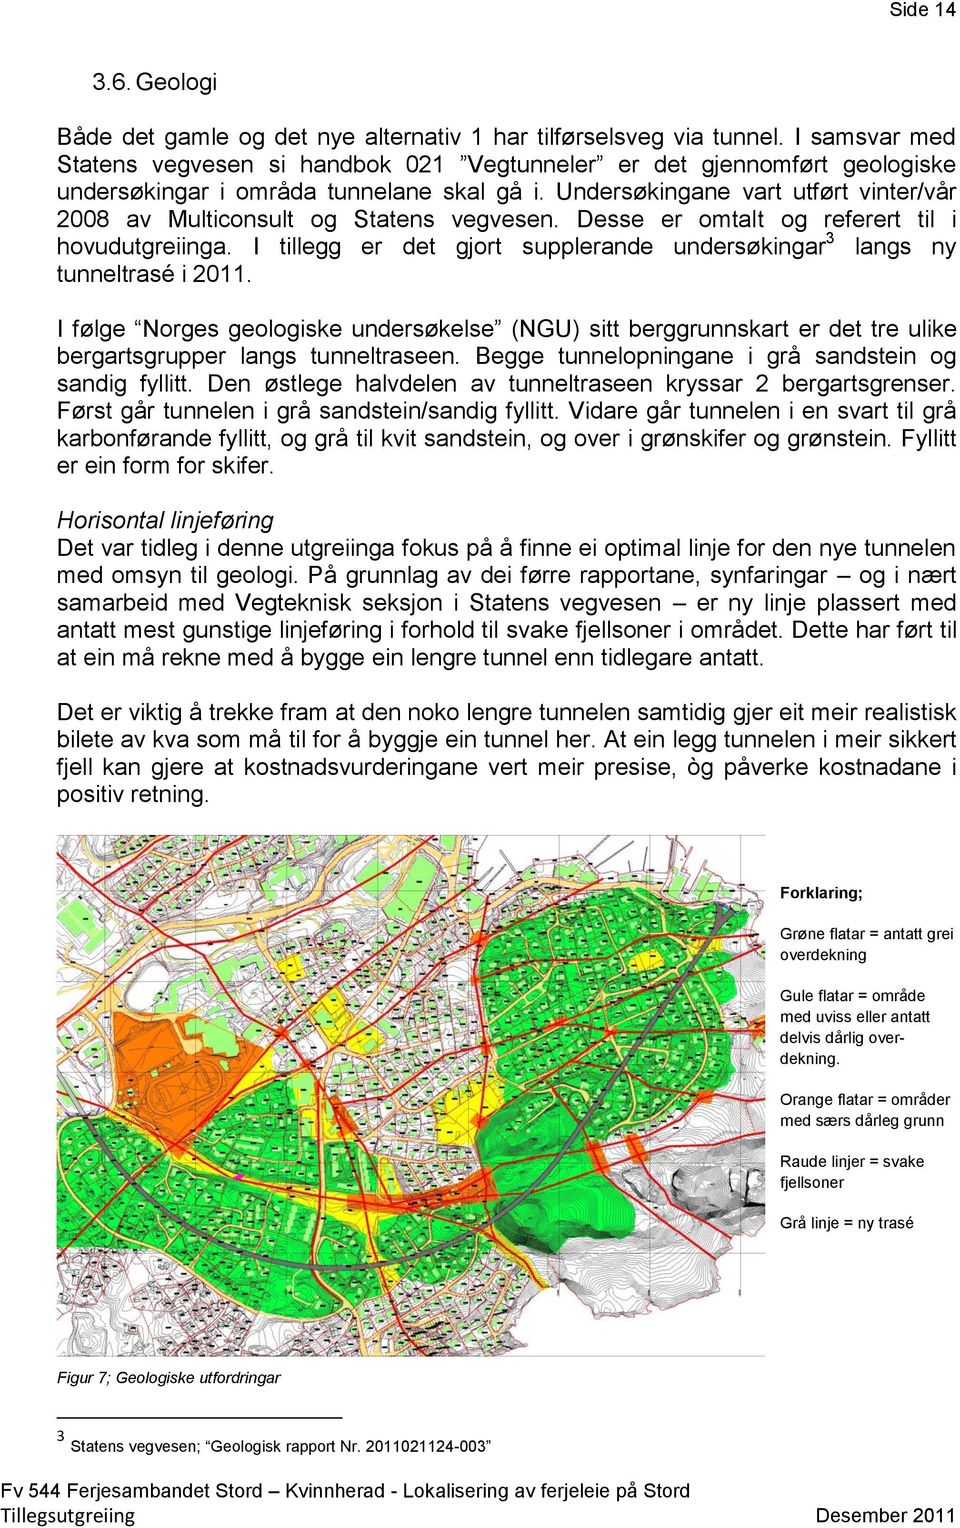 Undersøkingane vart utført vinter/vår 2008 av Multiconsult og Statens vegvesen. Desse er omtalt og referert til i hovudutgreiinga.